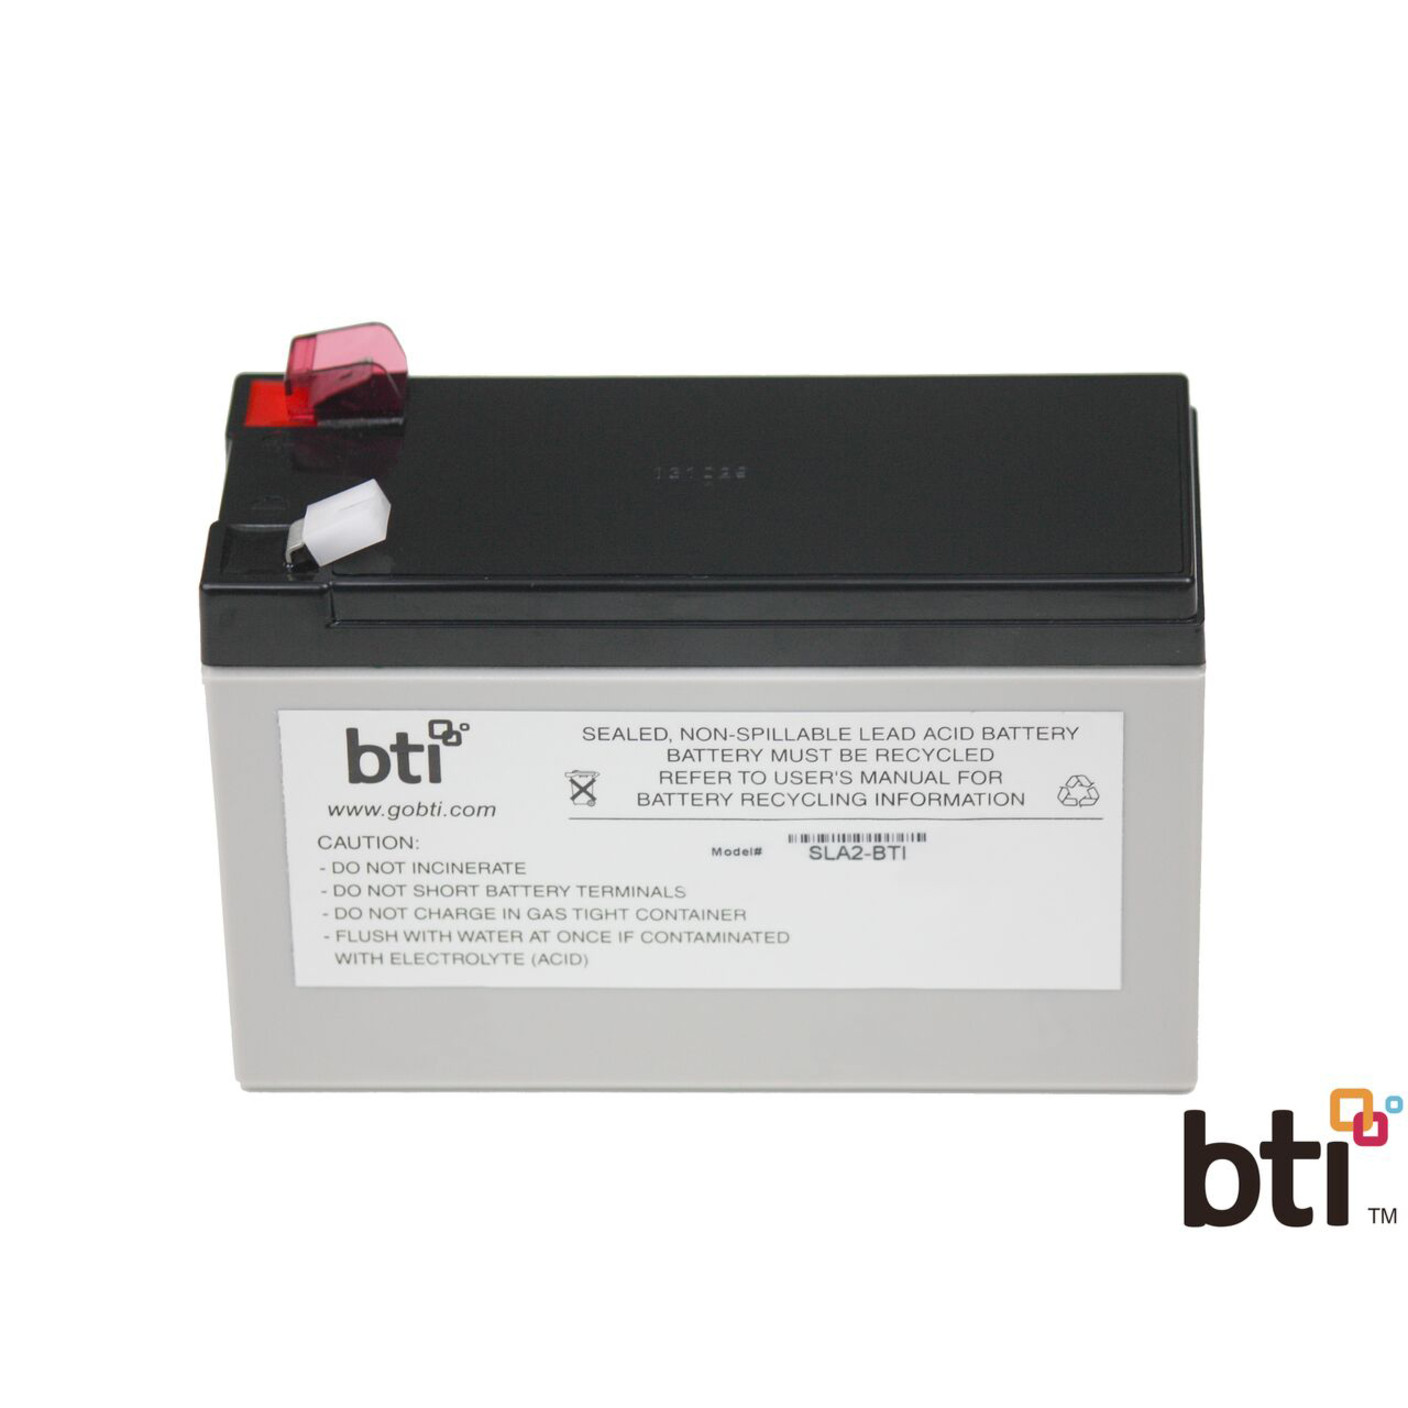 Battery Technology BTI Replacement  RBC2 for APCUPS Lead AcidCompatible with APC UPS BK500BLK BK350 BK500 SC420 RBC2-SLA2-BTI